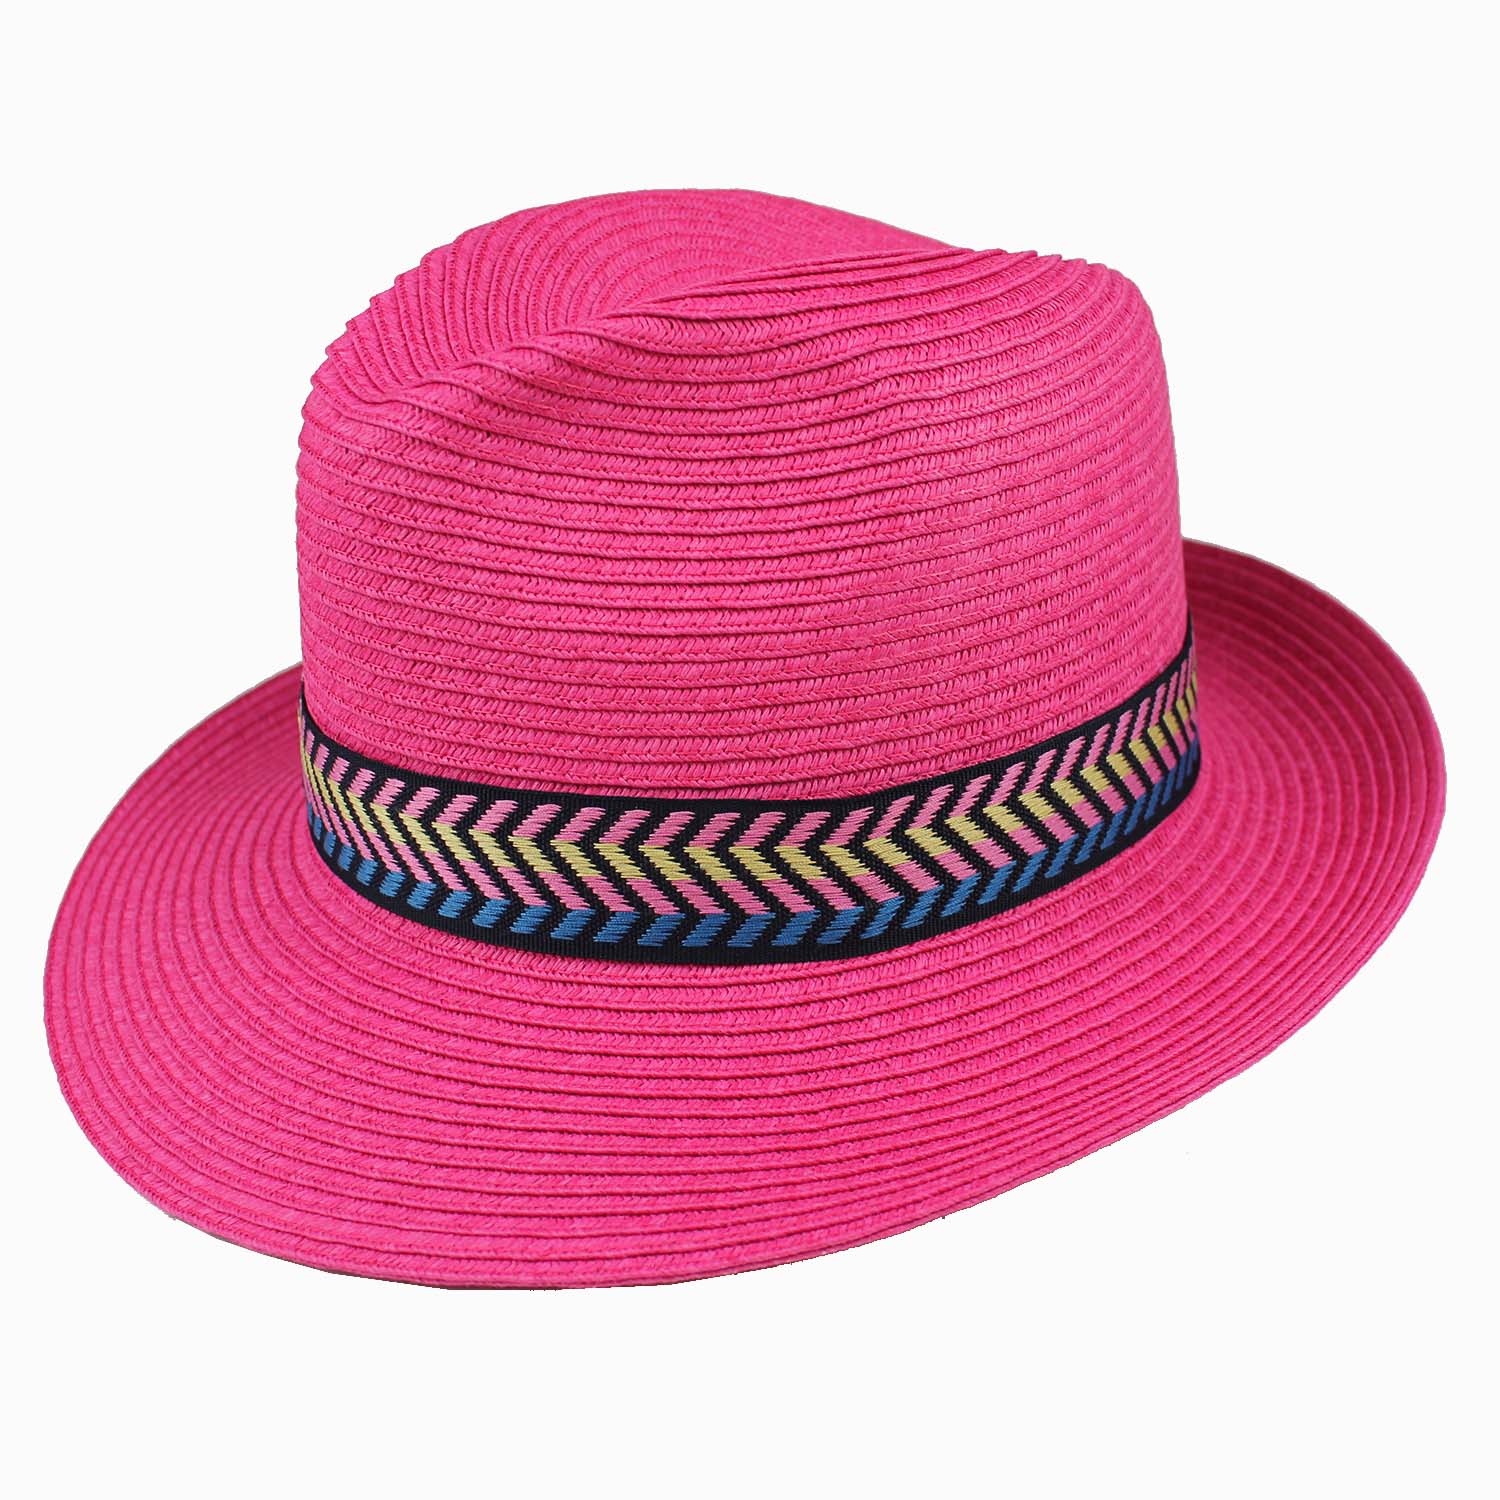 cappello-borsalino-donna-a-tesa-media-estivo-in-treccia-di-carta-colore-rosa-fucsia-con-nastro-colorato